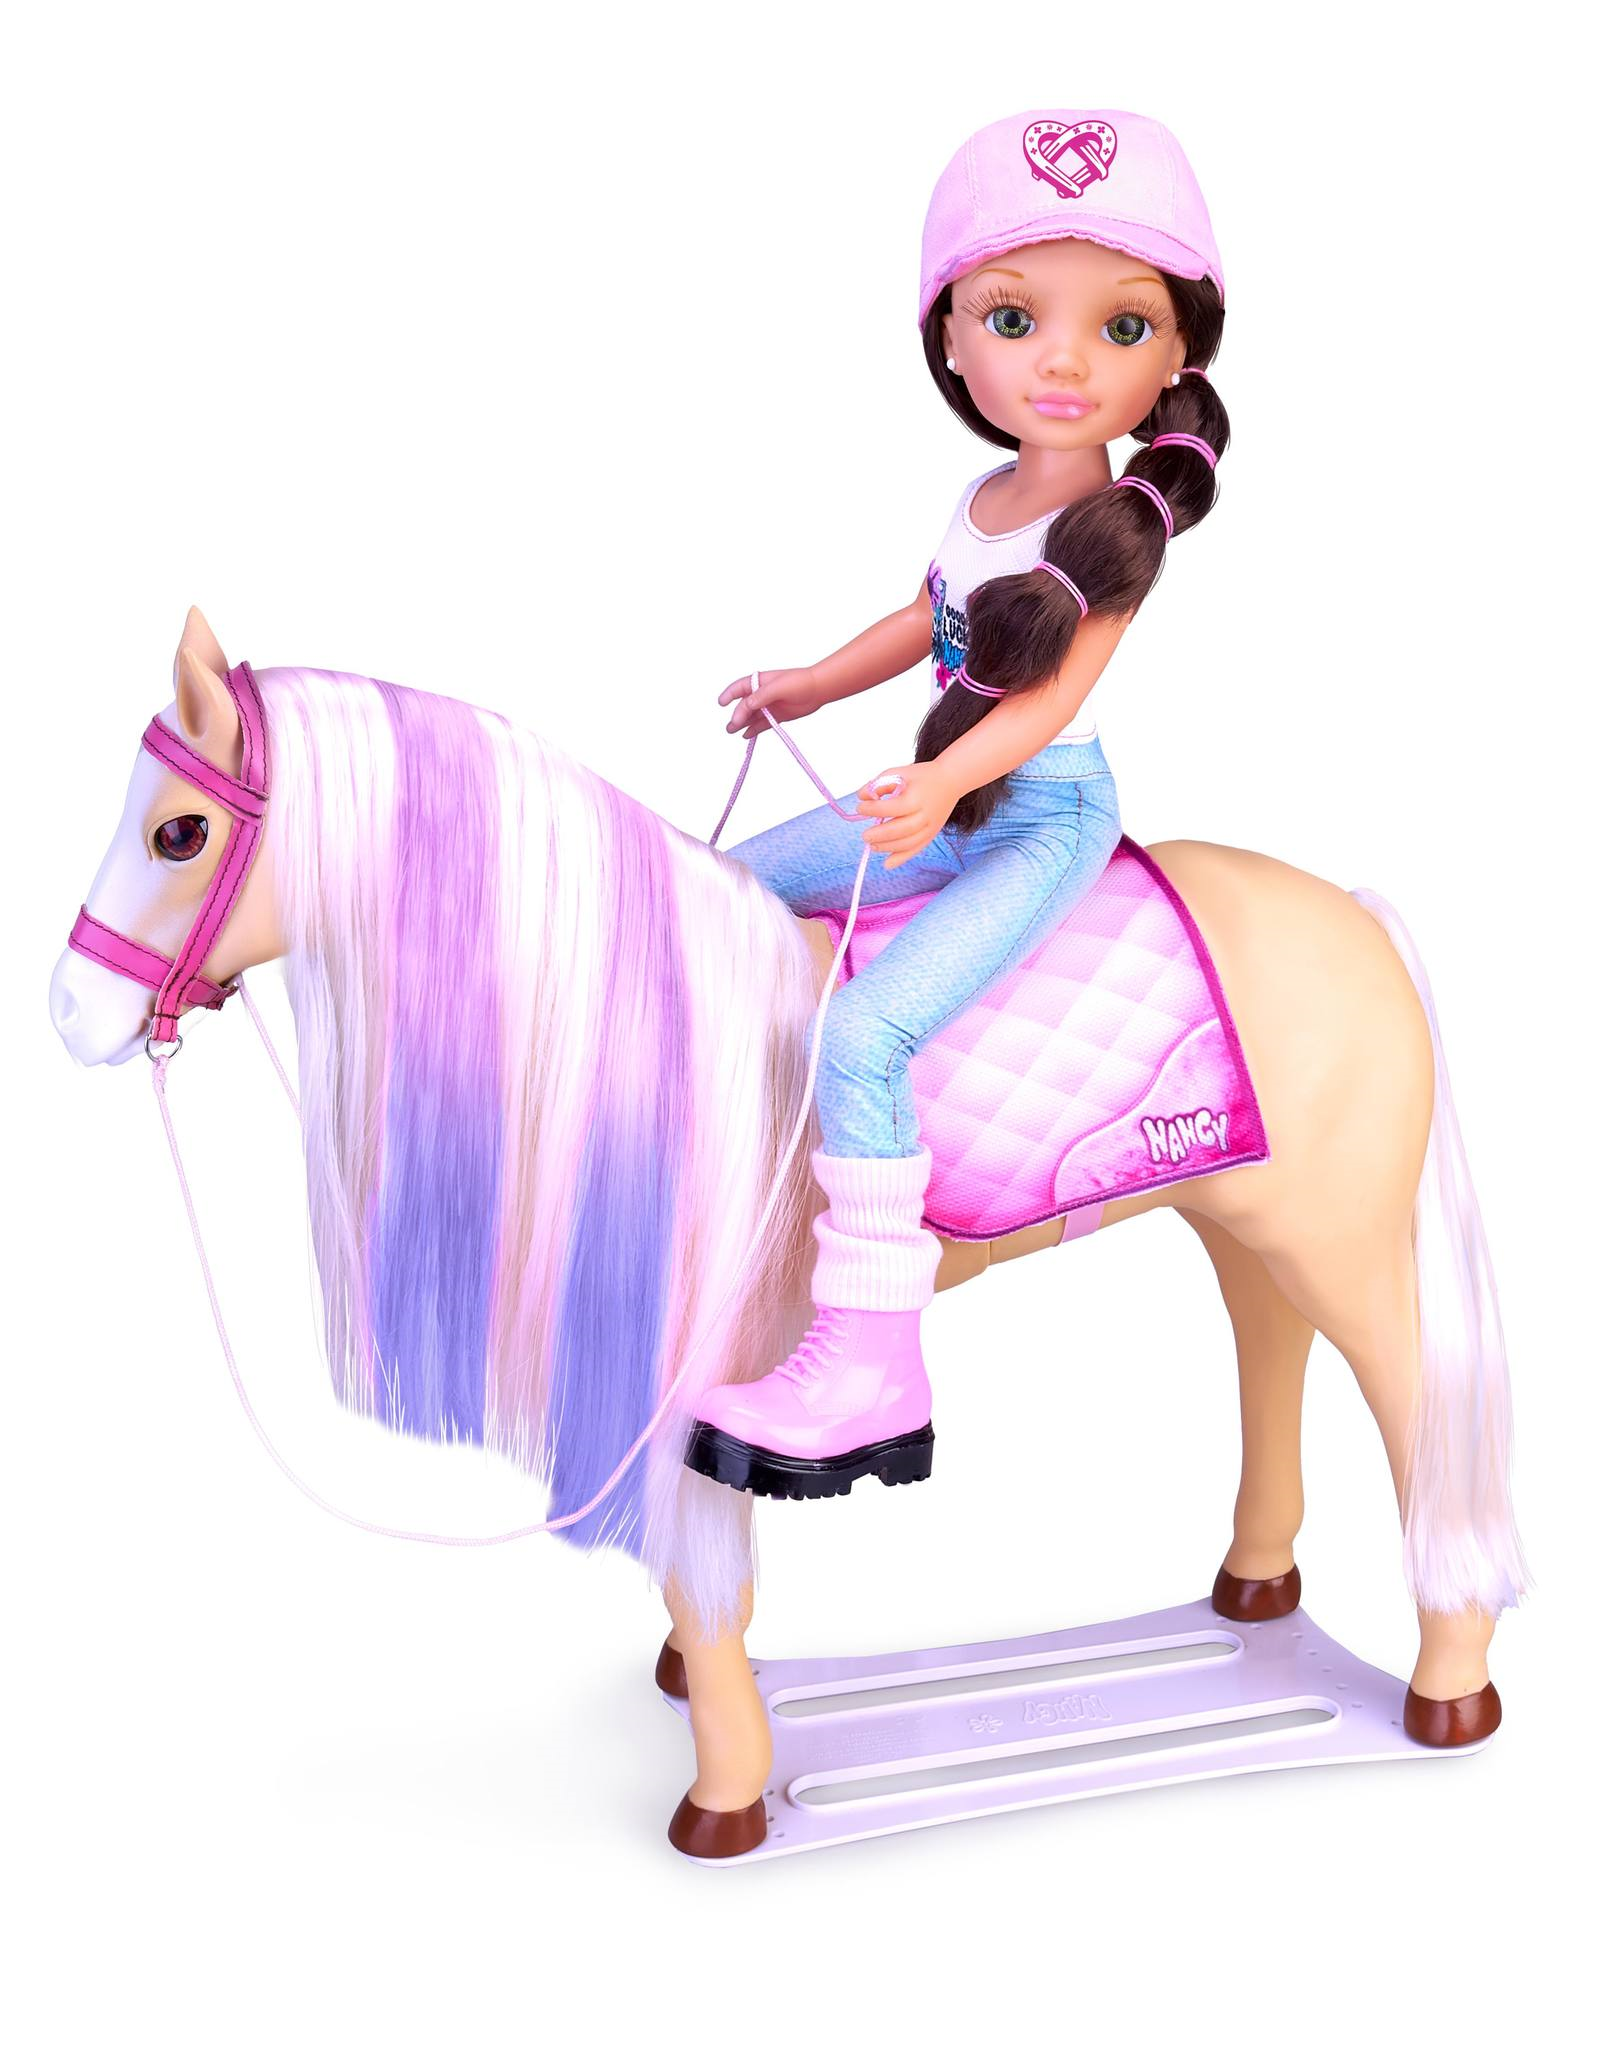 Nancy un giorno il suo cavallo, bambola nancy con cavallo e accessori; - NANCY